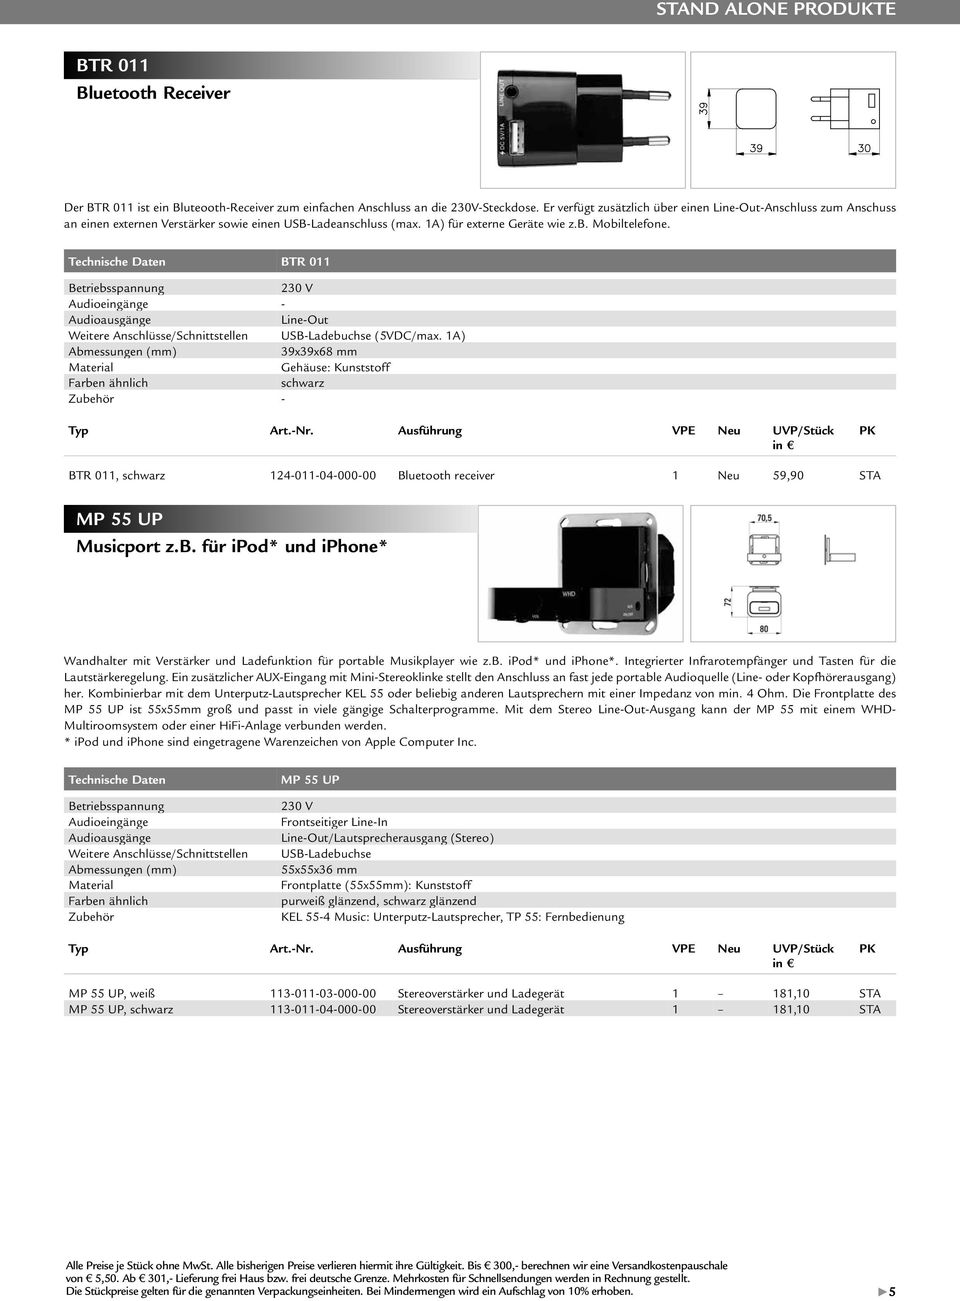 BTR 011 Betriebsspannung 230 V Audioeingänge - Audioausgänge Line-Out Weitere Anschlüsse/Schnittstellen USB-Ladebuchse (5VDC/max. 1A) 39x39x68 mm Gehäuse: Kunststoff Farben schwarz - Art.-Nr.